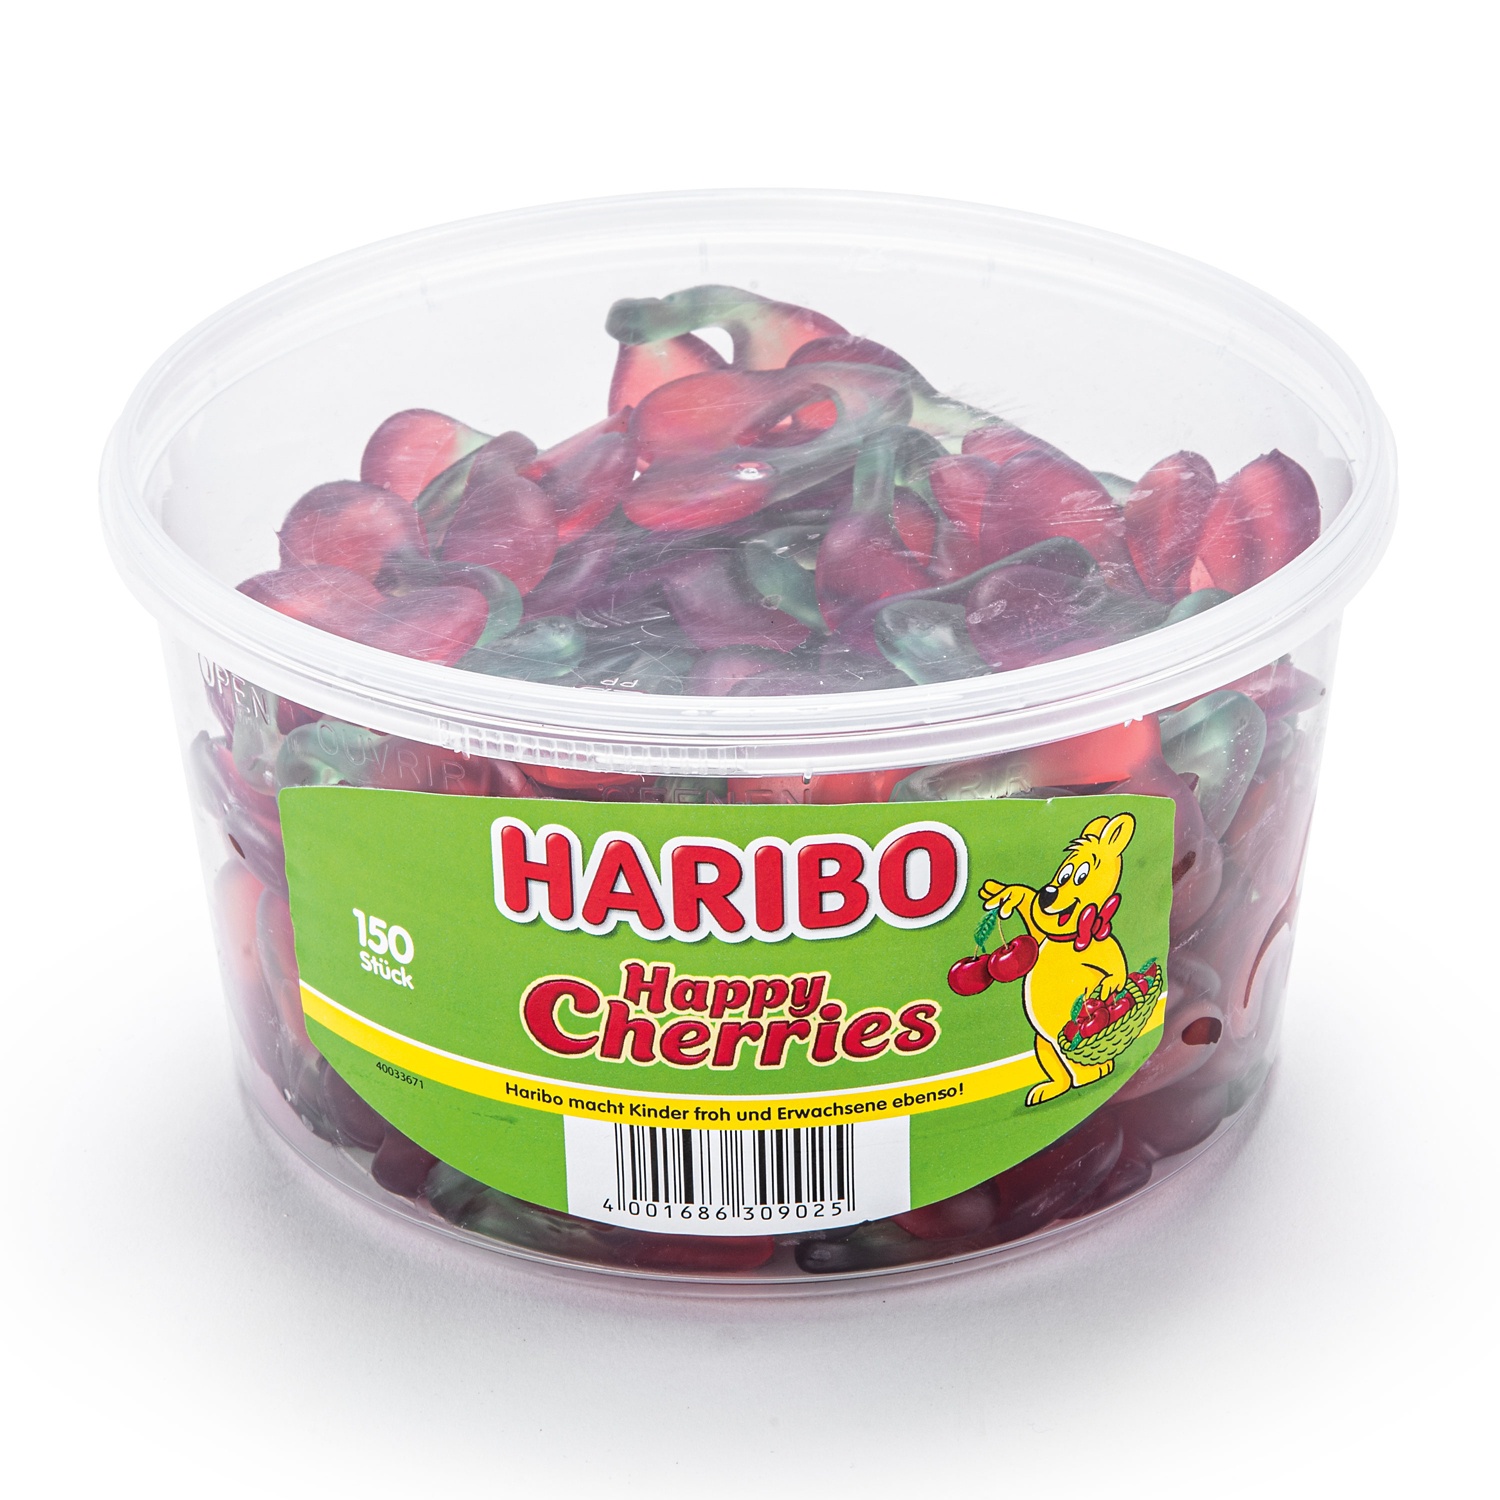 HARIBO Megadose, Cherries